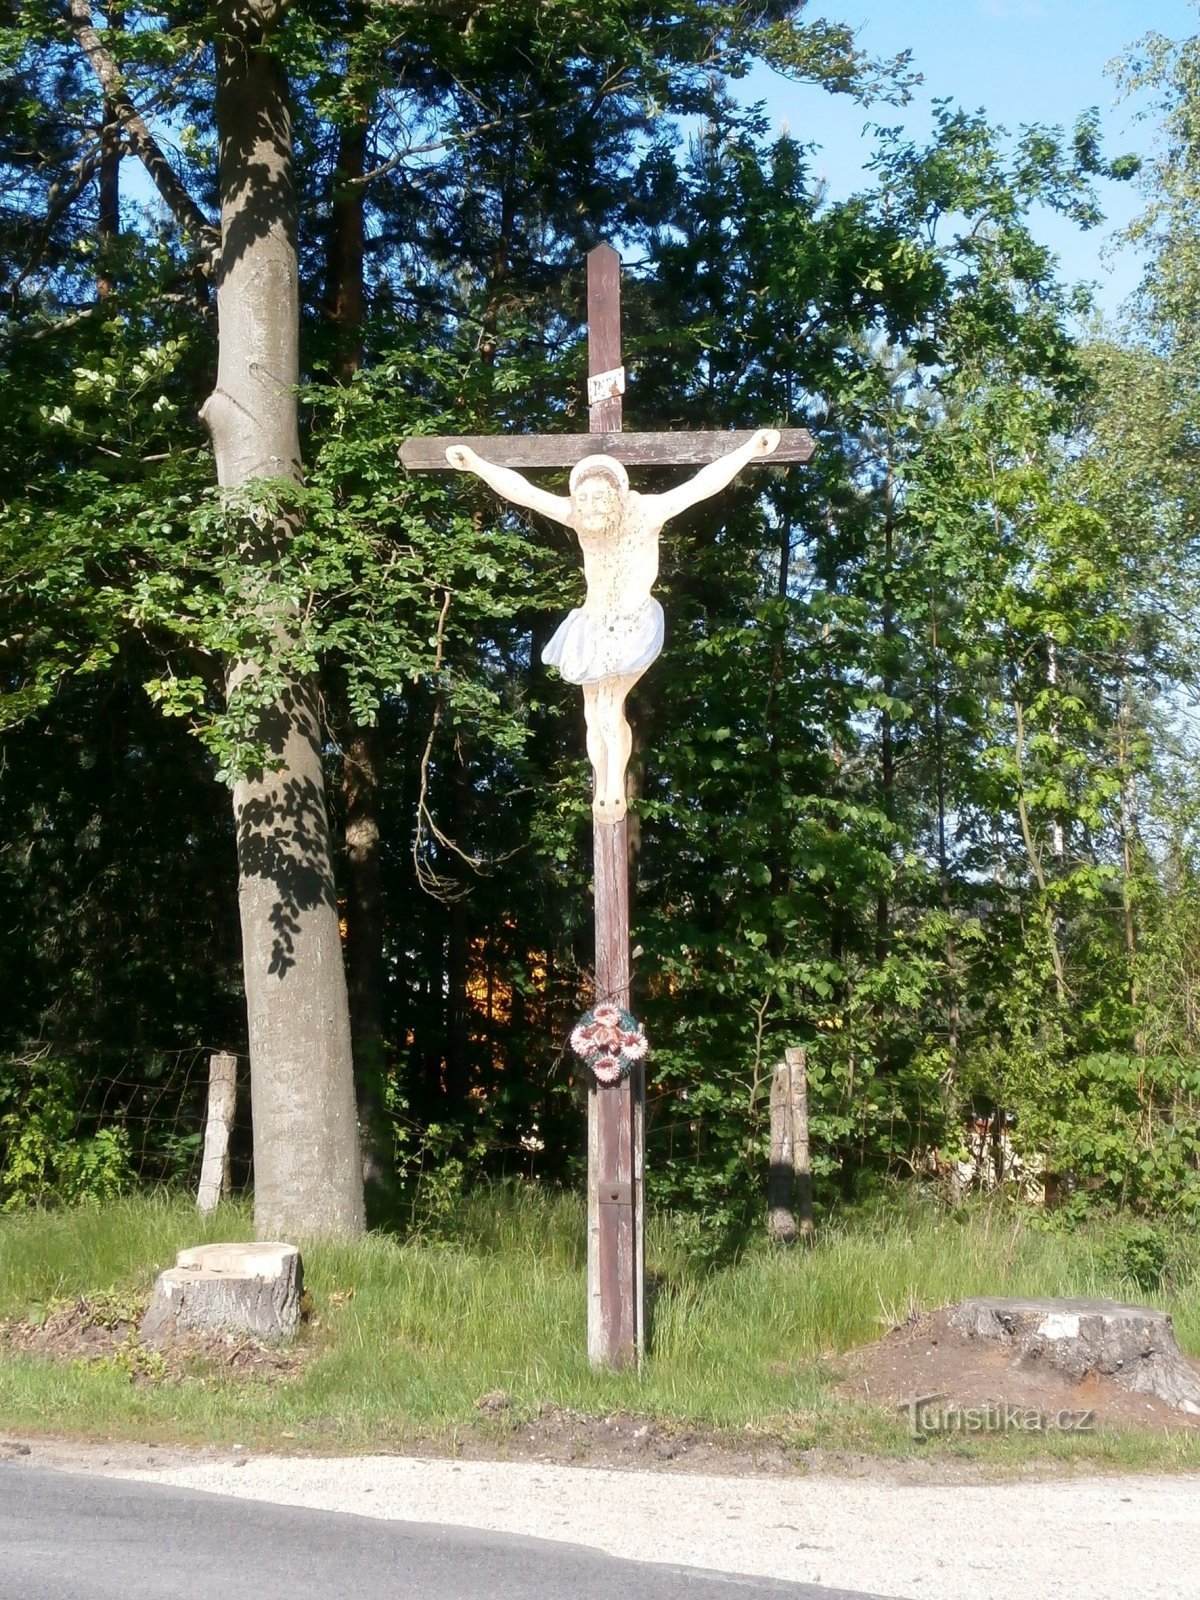 Cross nära Marokánka (Běleč nad Orlicí, 27.5.2017/XNUMX/XNUMX)